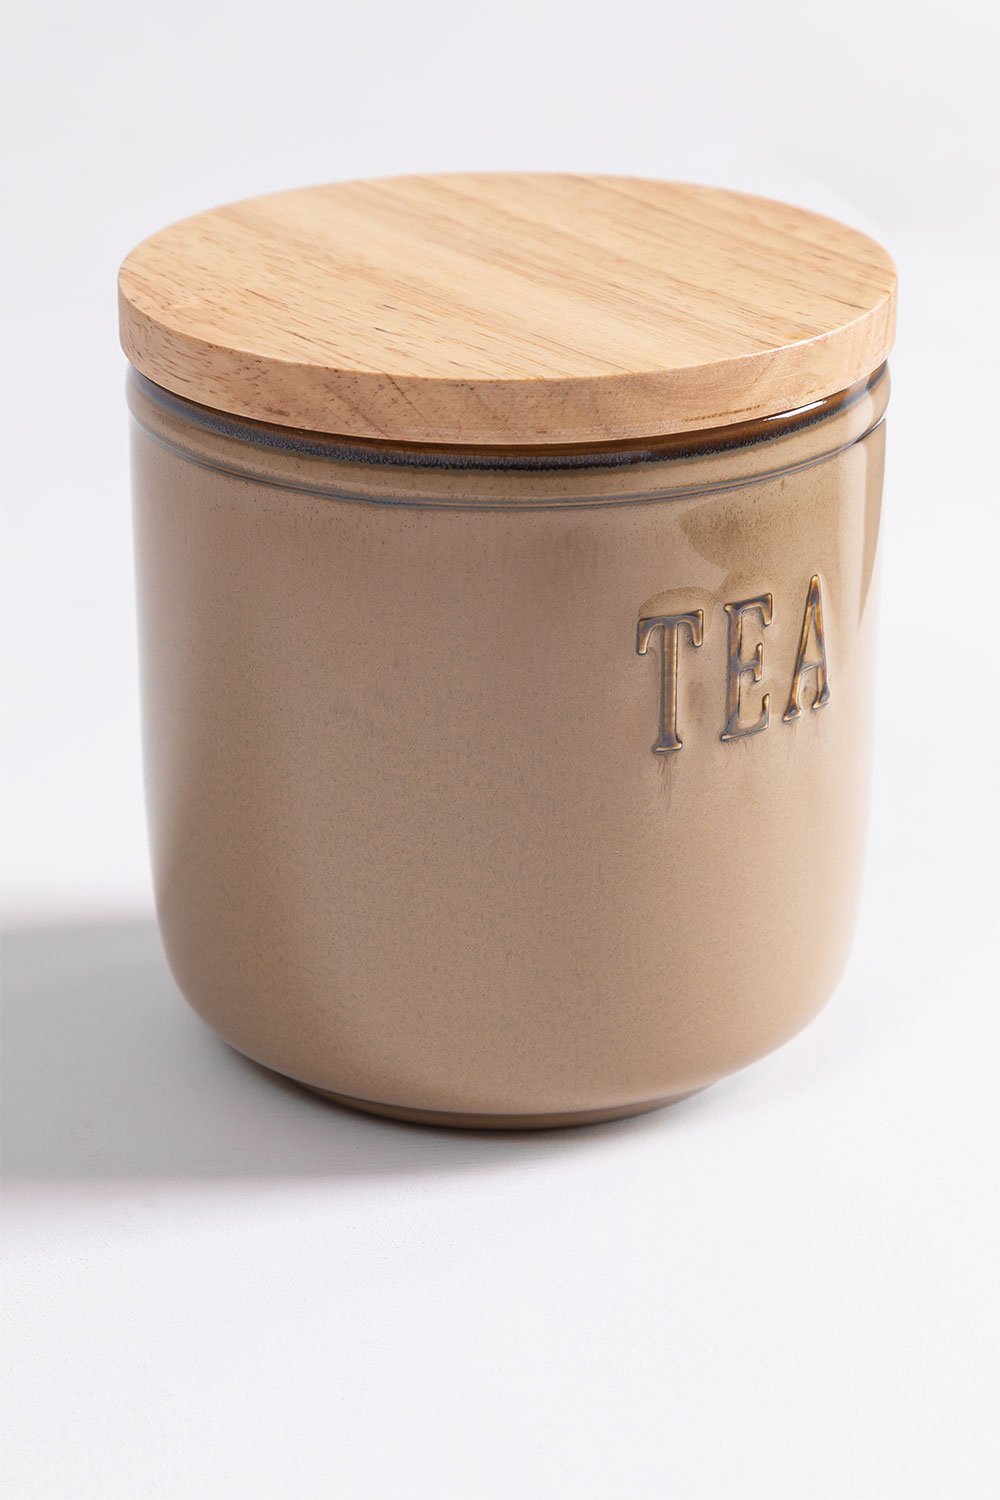 Tea Jar Treska , gallery image 2